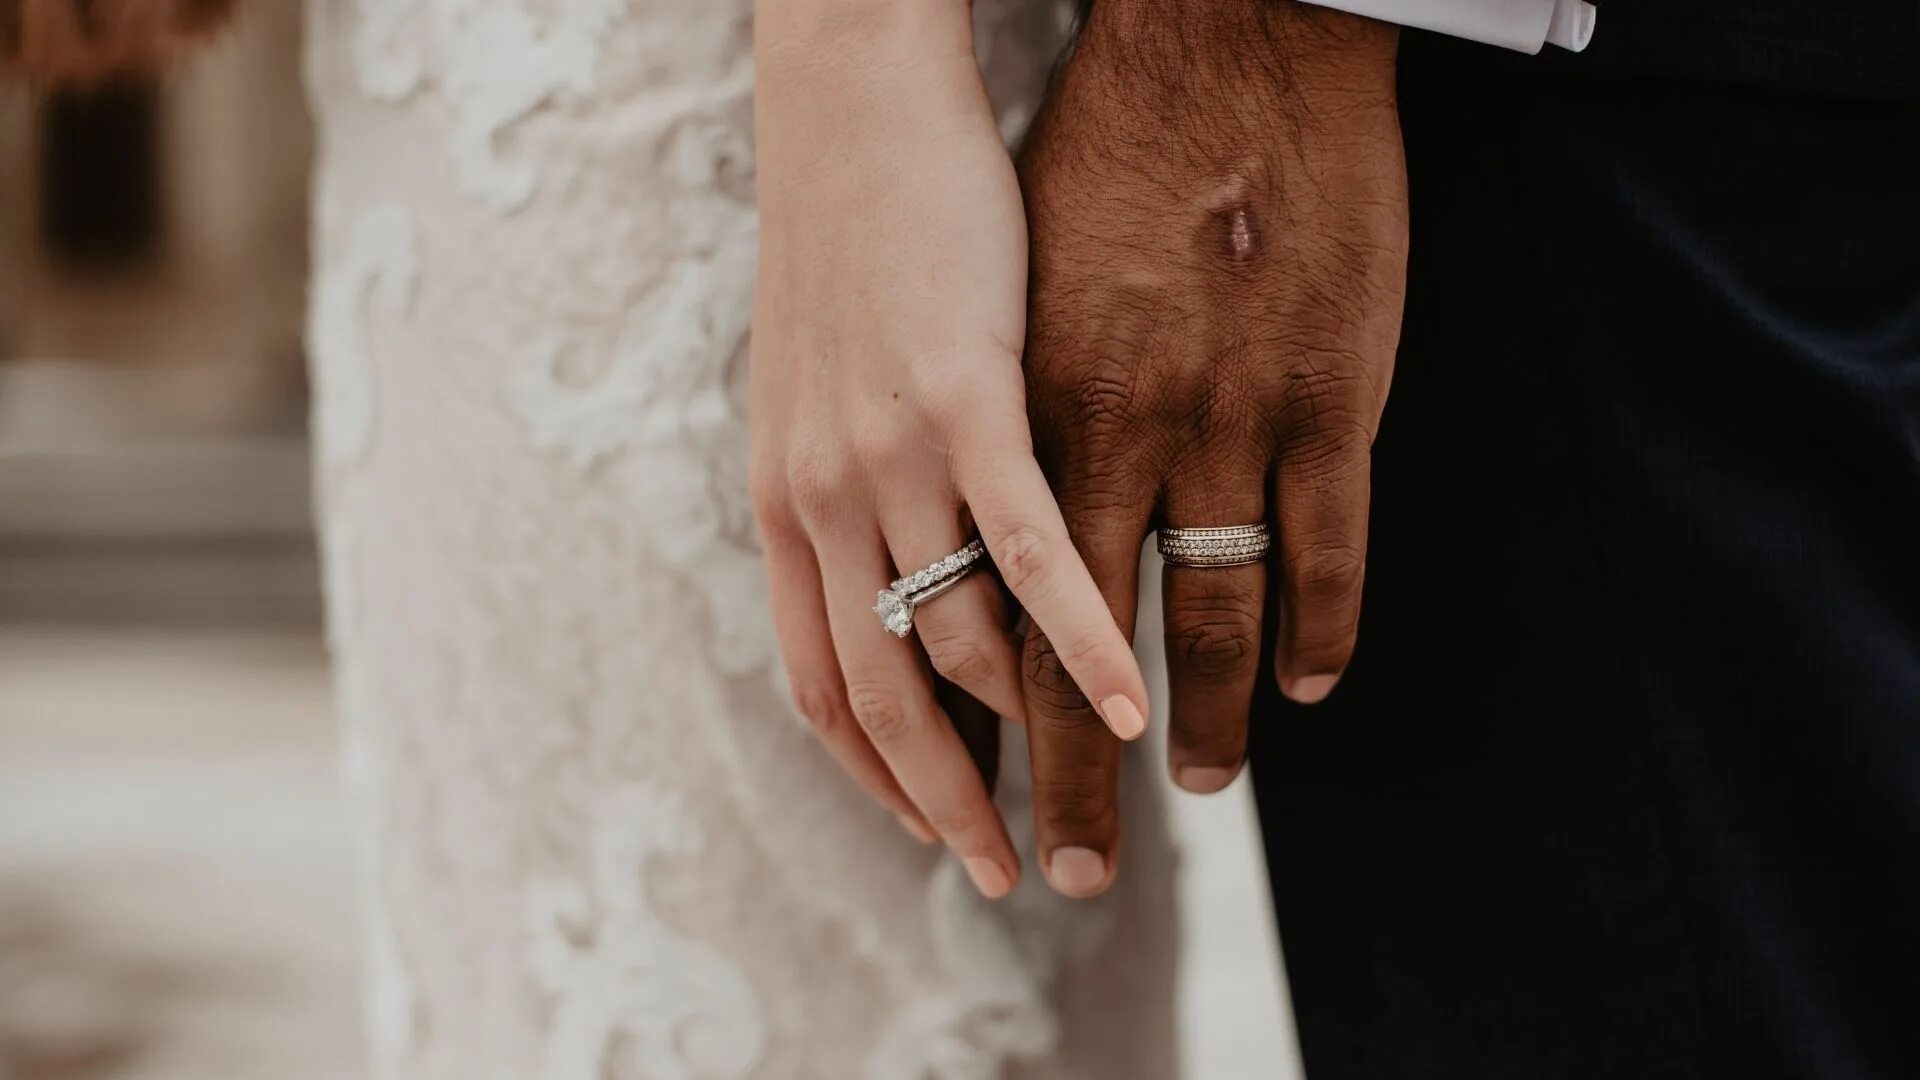 Кольцо брак на какой руке. Обручальные кольца на руках. Свадебные кольца на руках. Свадьба руки с кольцами. Кольца жениха и невесты.